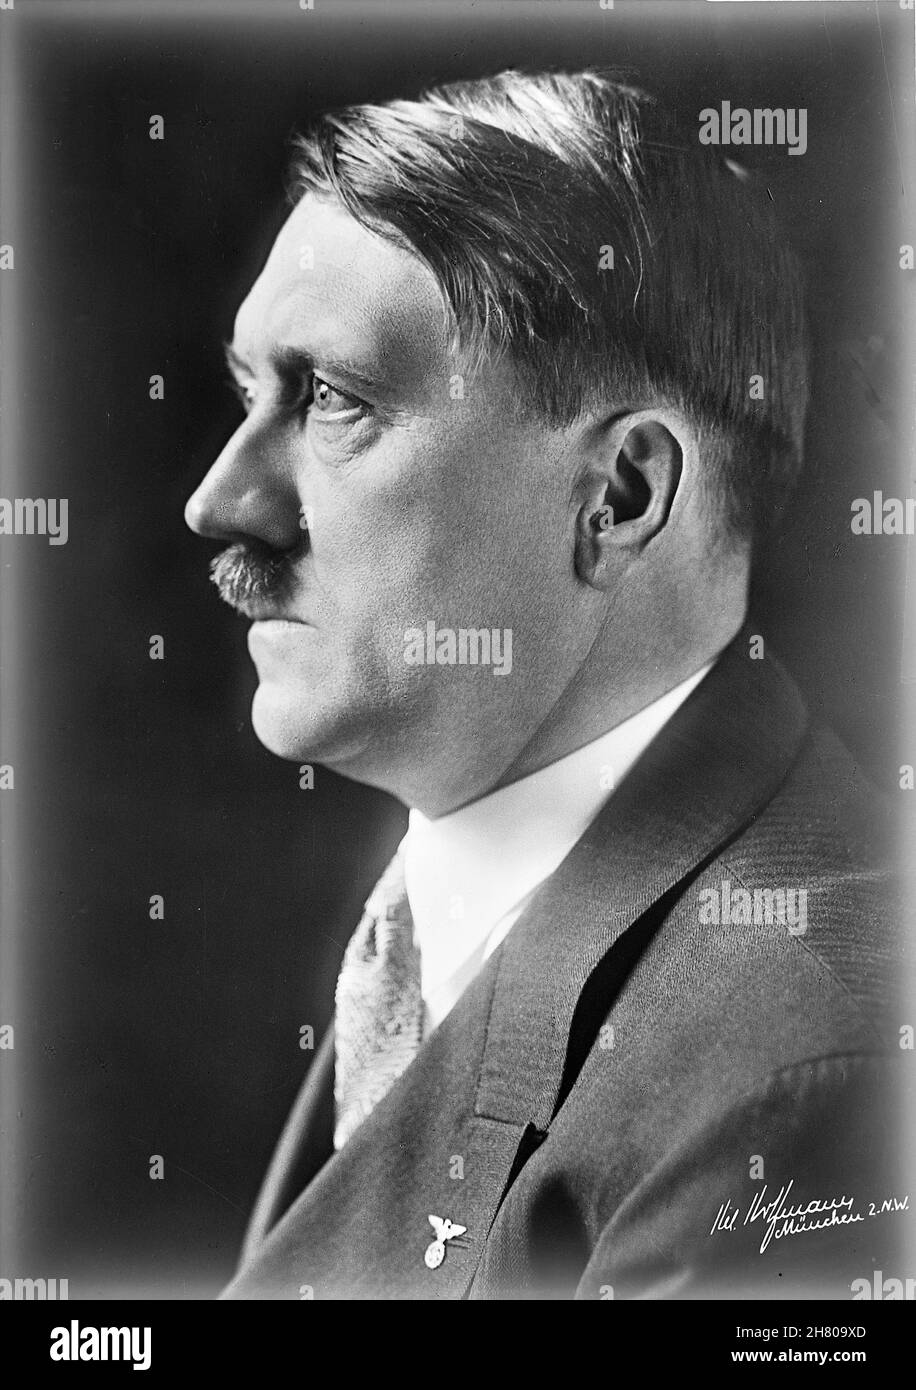 DEUTSCHLAND - um 1935 - Studioportrait des damaligen deutschen Bundeskanzlers Adolf Hitler - Foto: Geopix Stockfoto